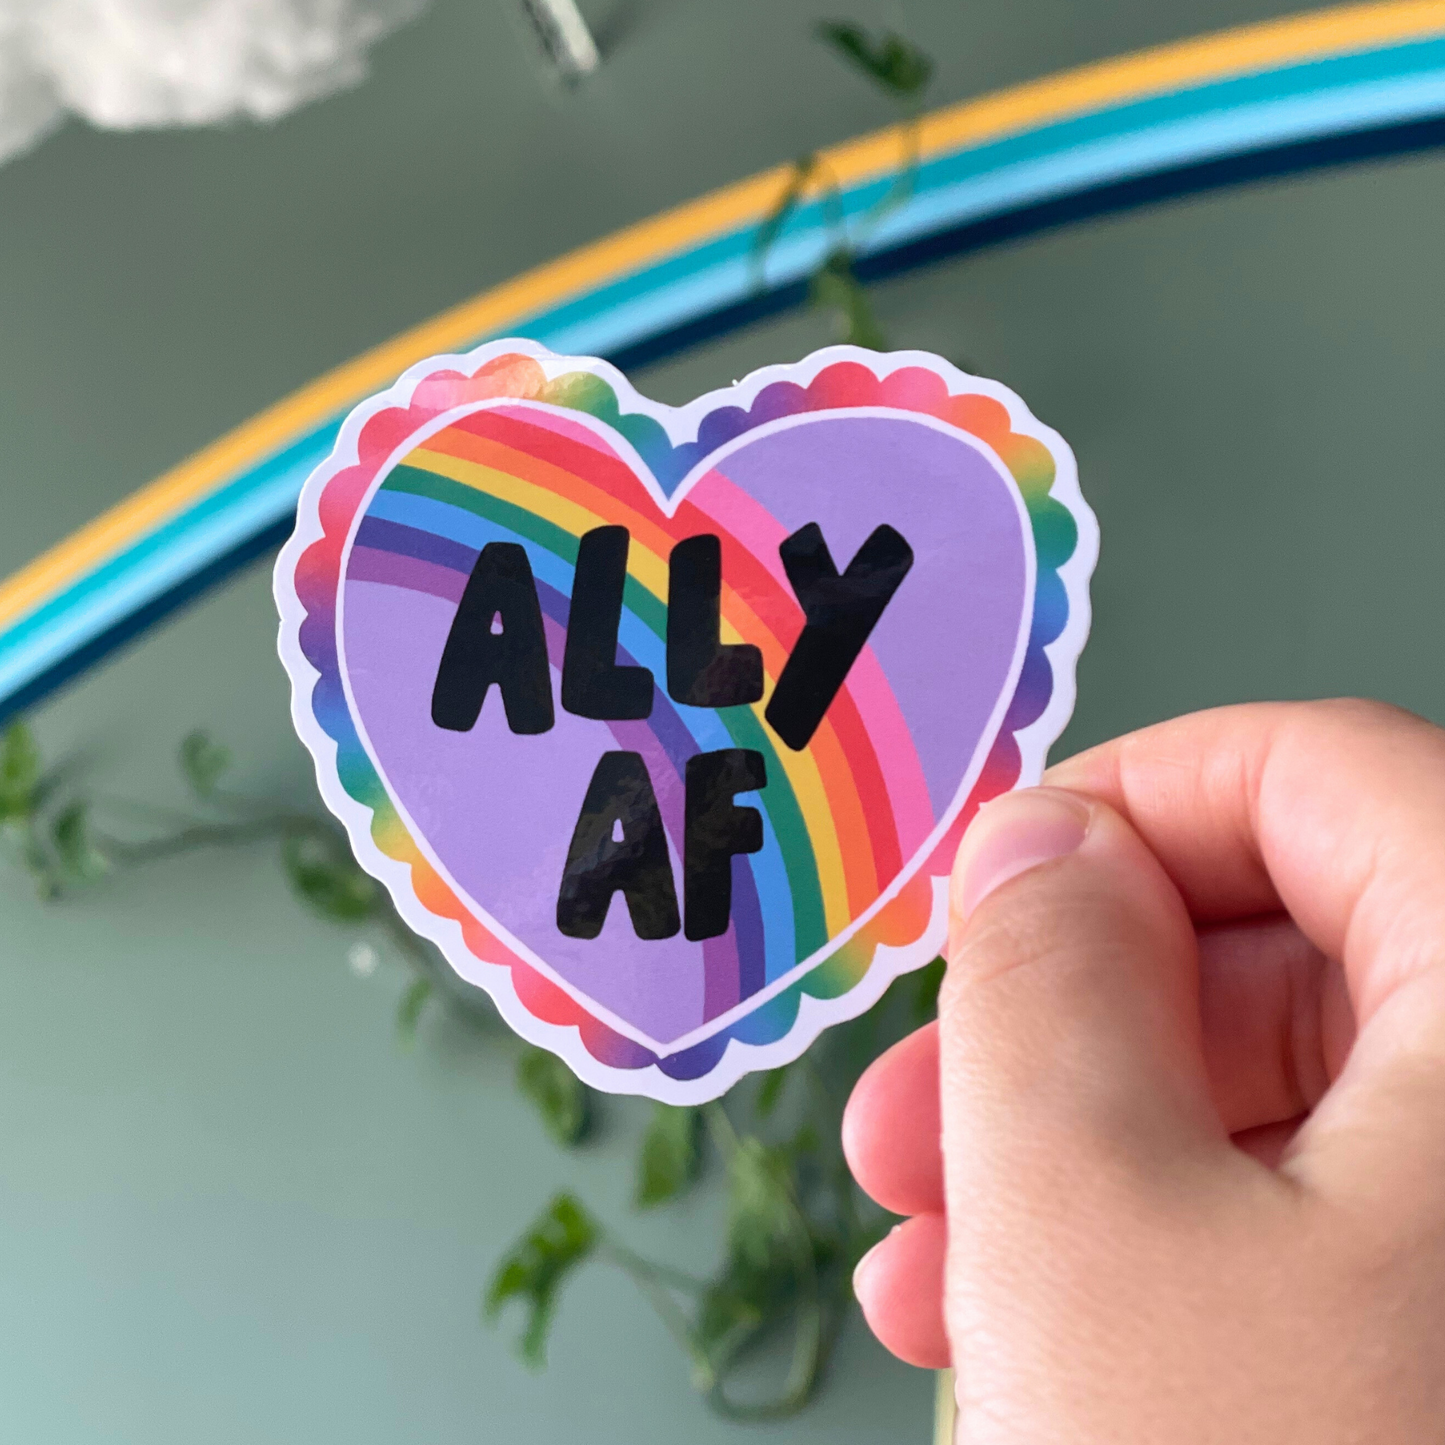 Ally AF Sticker